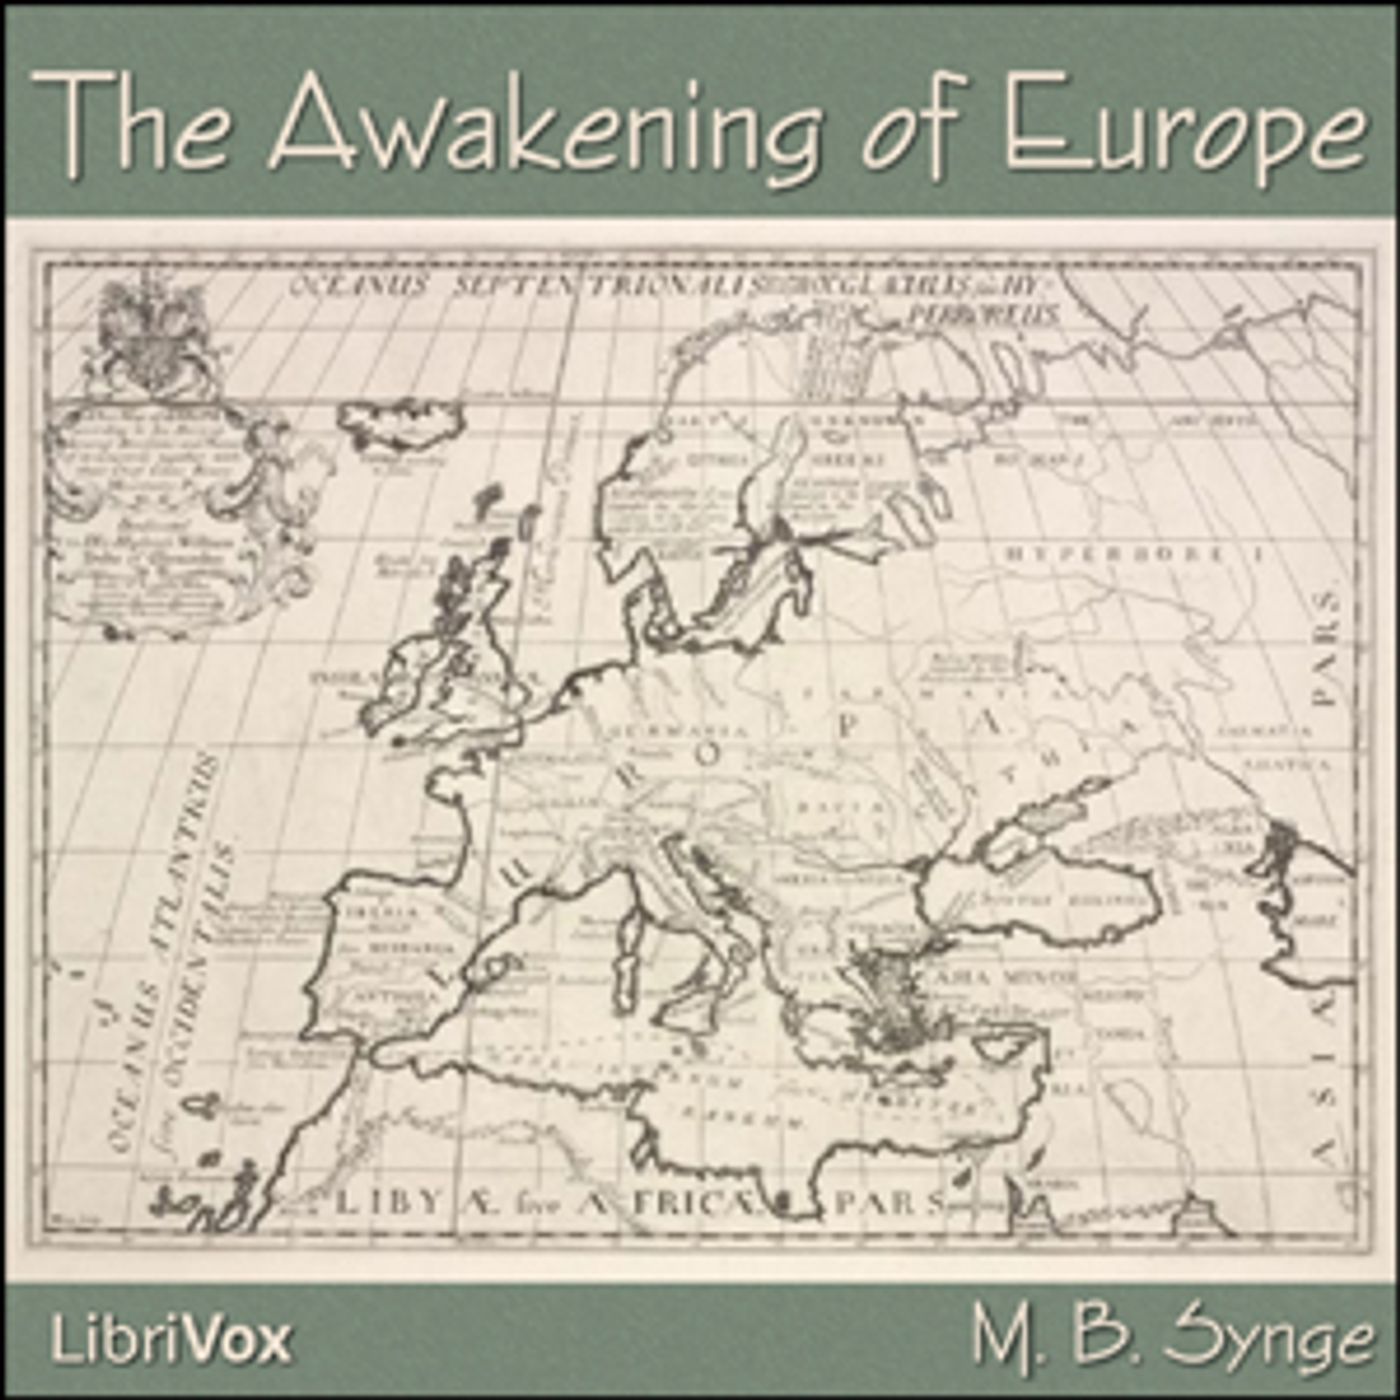 Awakening of Europe, The by M. B. Synge (1861 – 1939)